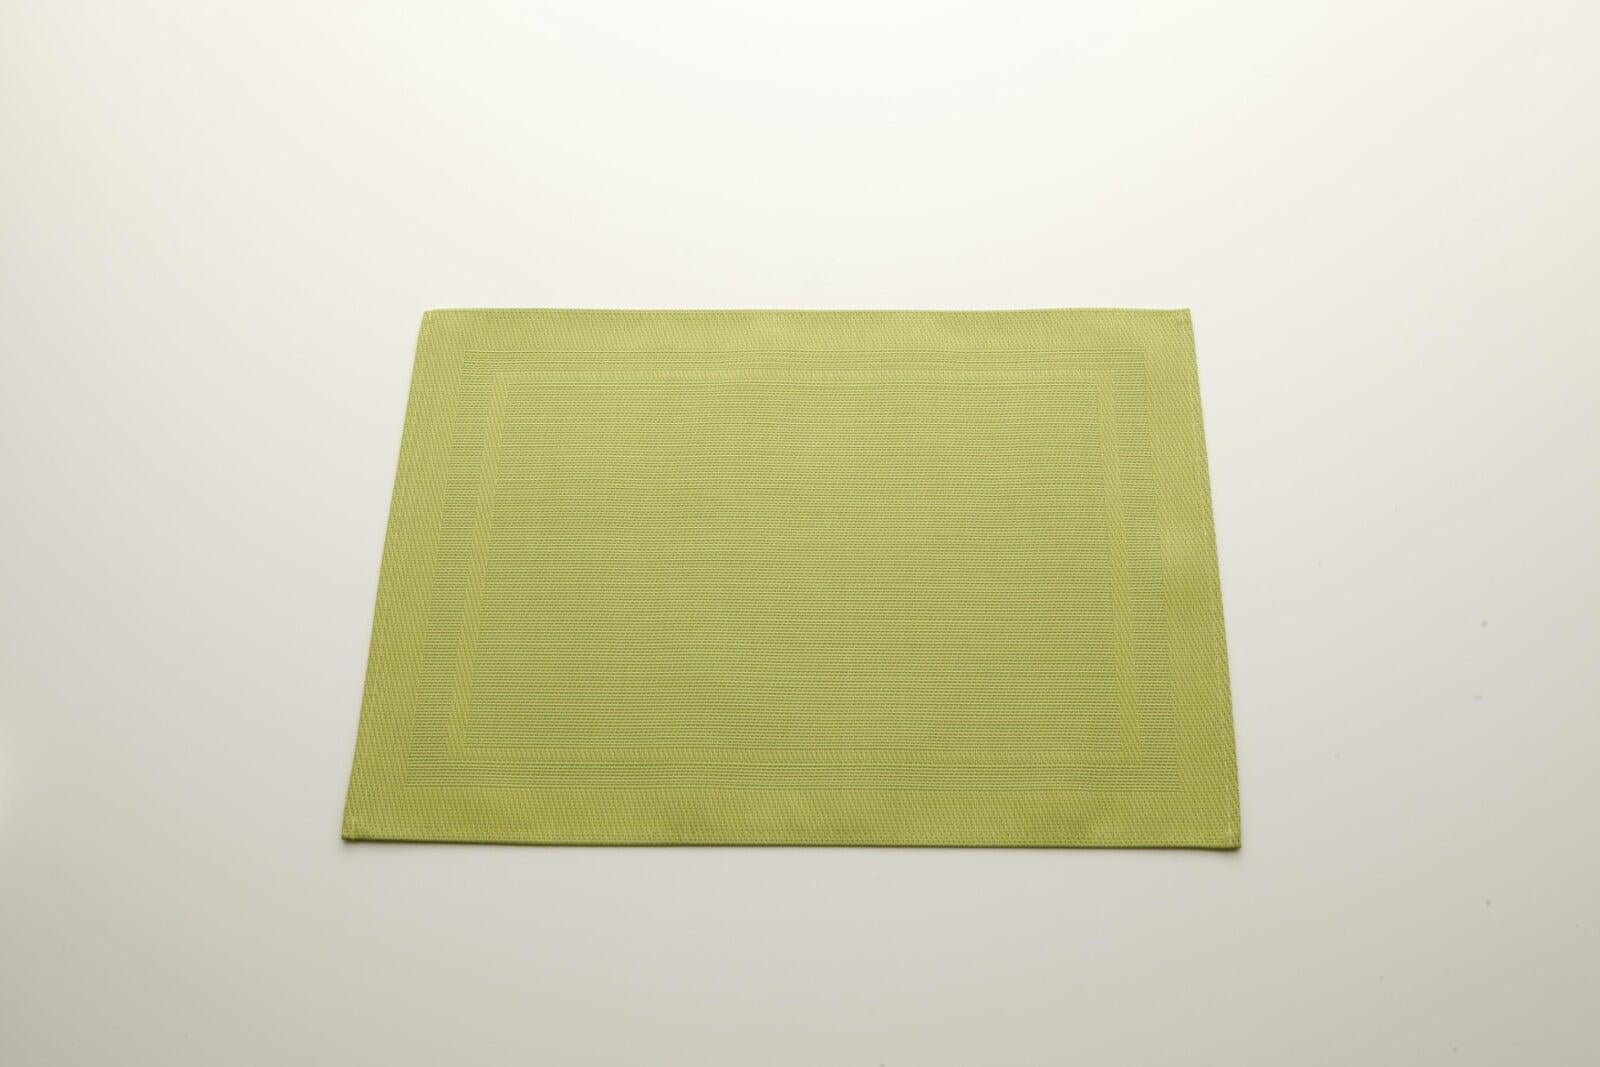 ランチマット - TISECO HOME STUDIO 44.5cm * 33.5cm 黄緑色